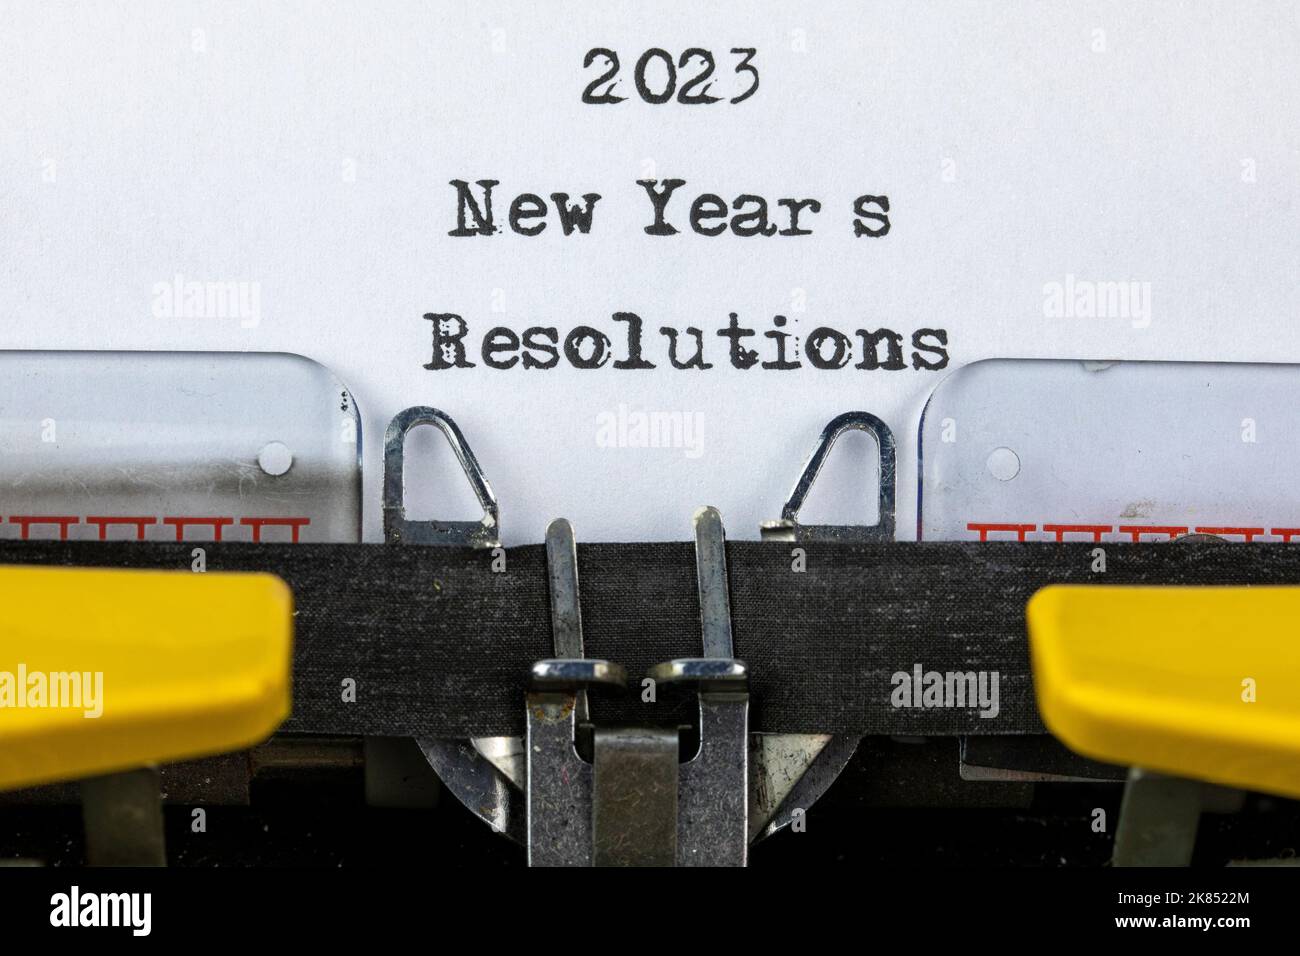 2023 résolutions du nouvel an écrites sur une vieille machine à écrire Banque D'Images